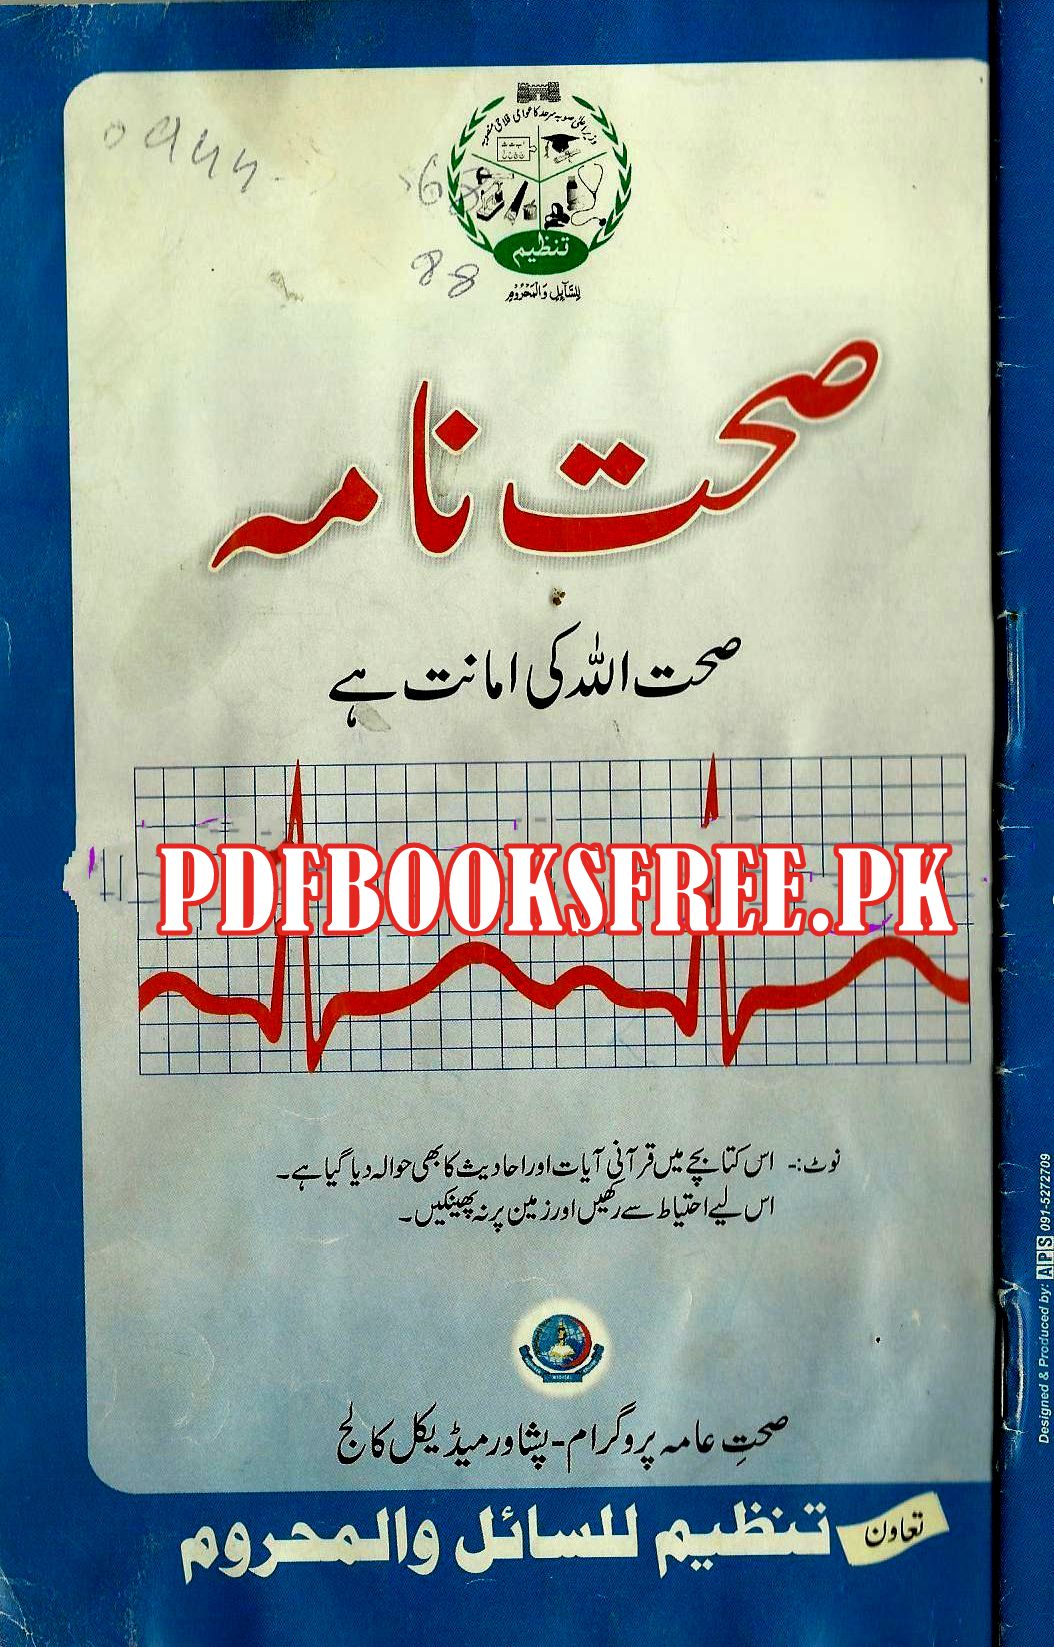 free medical books pdf download